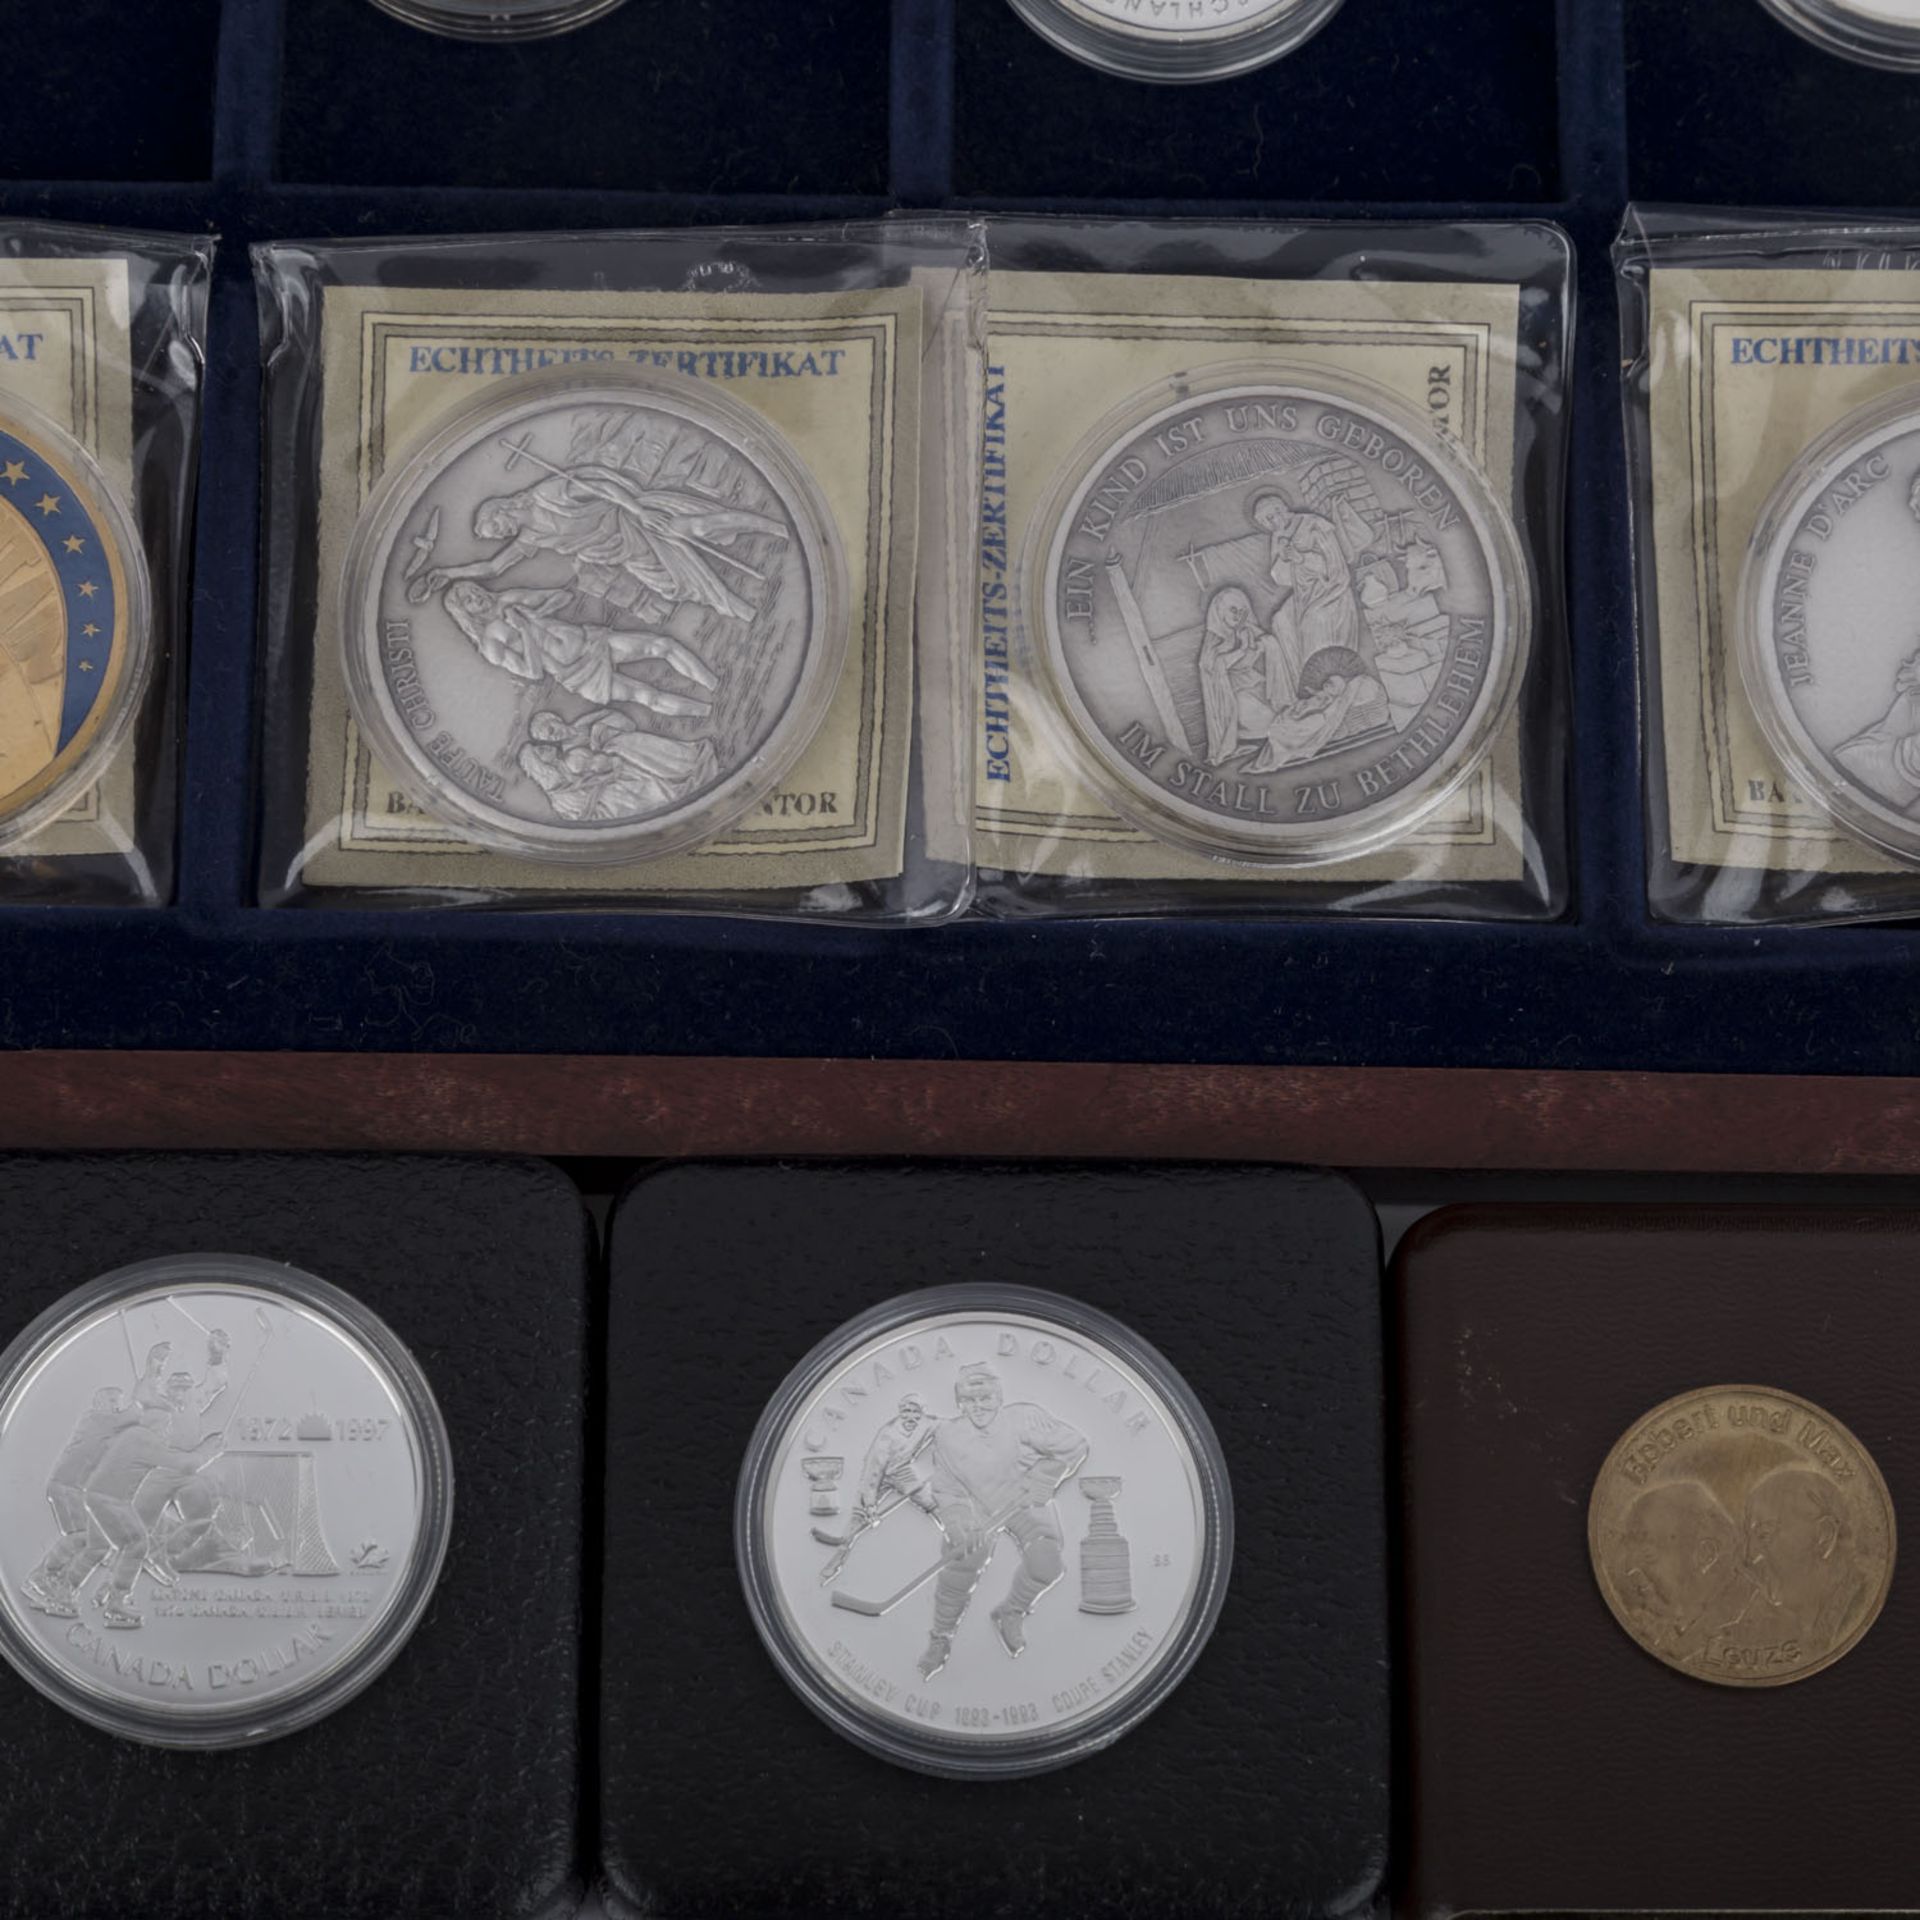 Lot aus diversen Münzen und Medaillen,mit Anteil Gold in der Form von Medaille 6,2 g fein "Mozart" - Bild 3 aus 6